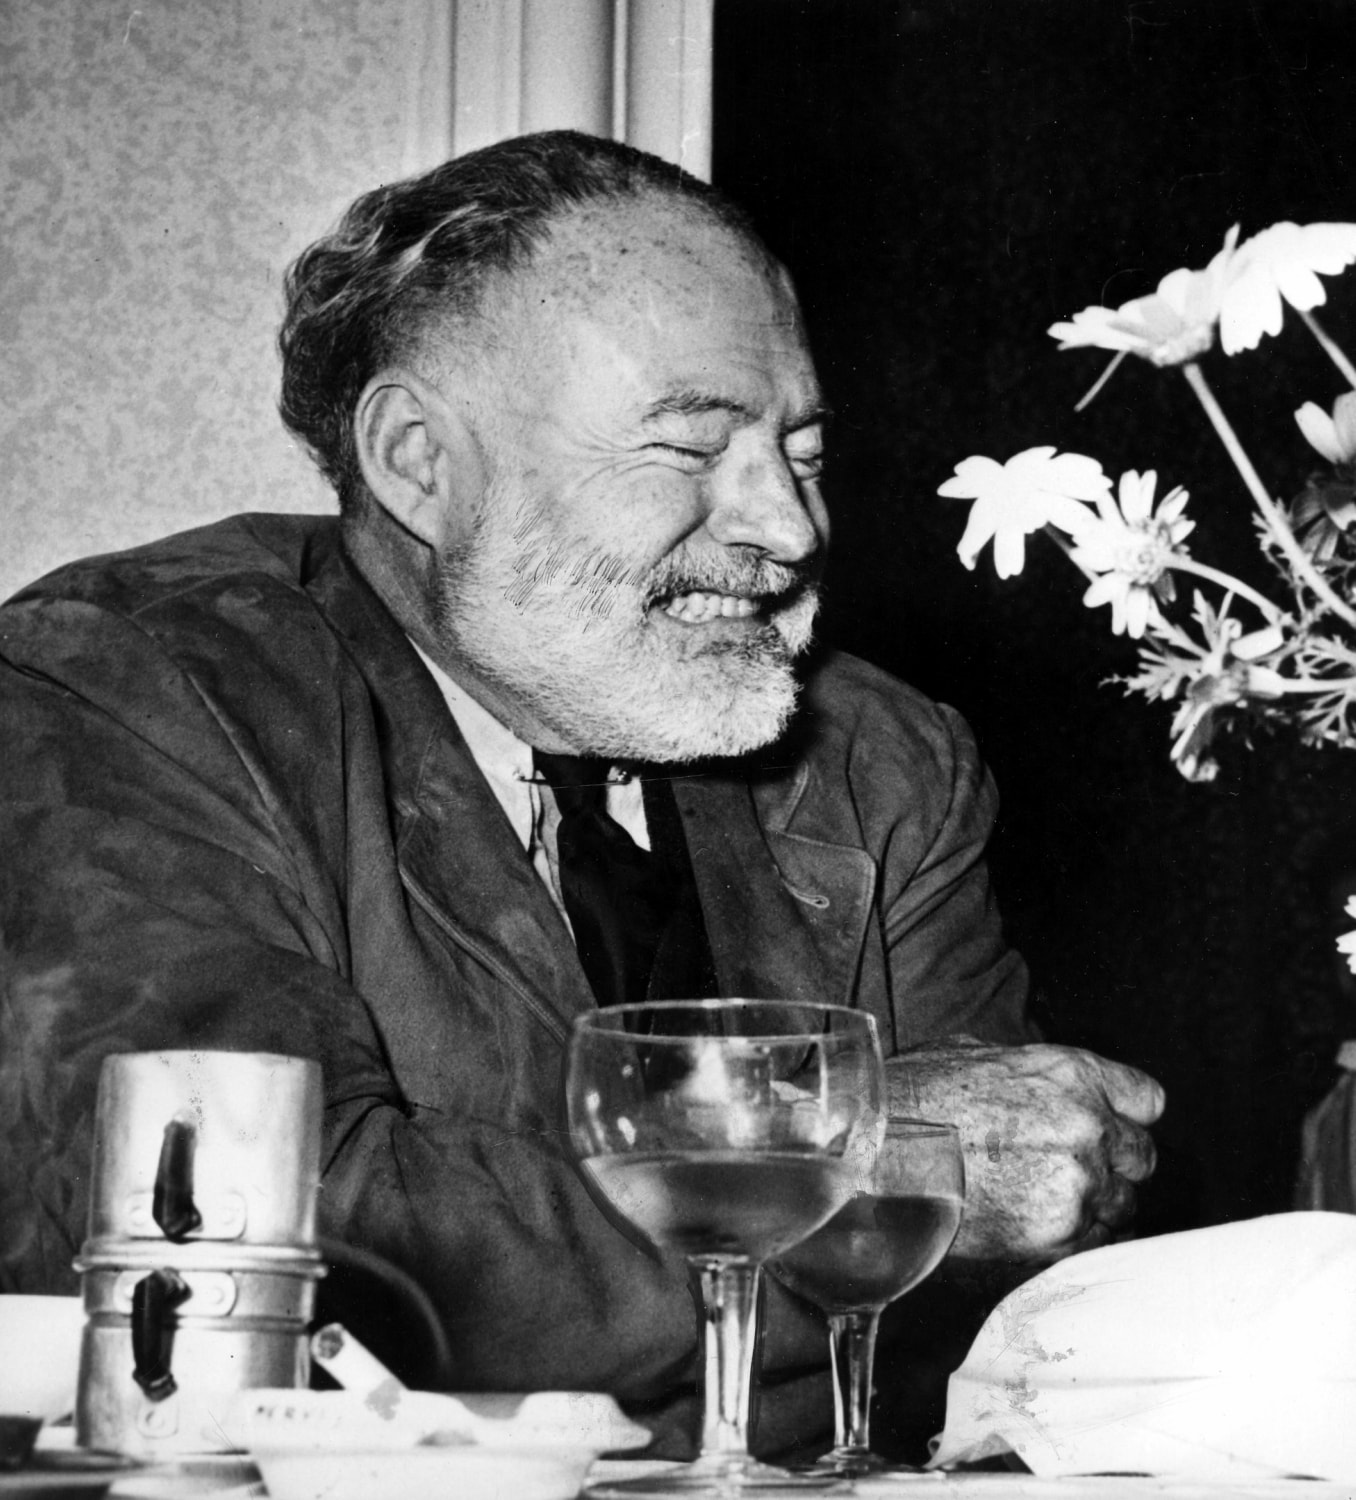  “Allora prendiamo un altro Martini” disse la ragazza. “Lo sai che non avevo mai bevuto un Martini prima di conoscerti?”. “Lo so. Ma li bevi talmente bene” - Ernest Hemingway